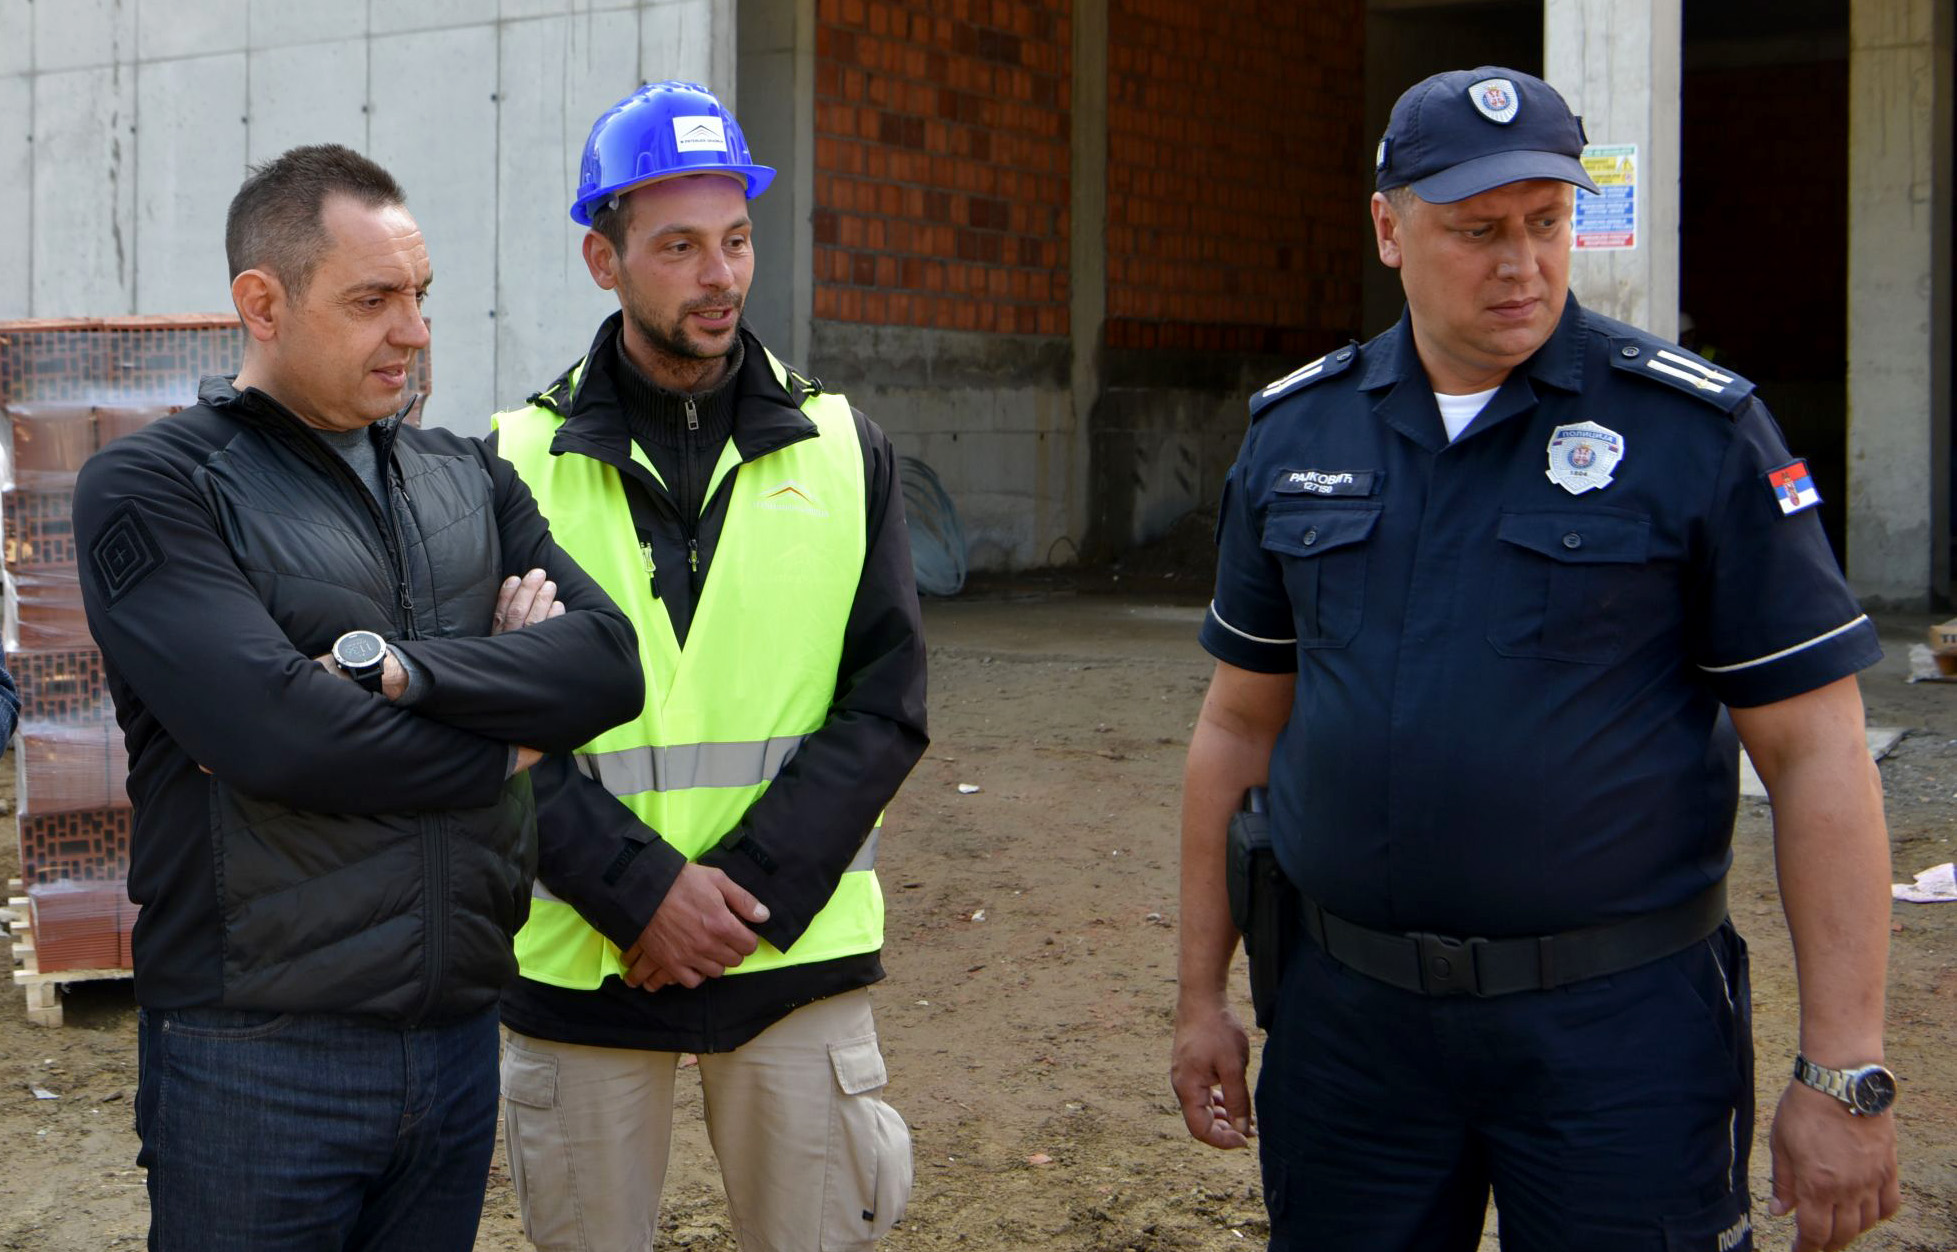 Ministar Vulin: Zahvalјujući ekonomskoj snazi Srbije možemo da ulažemo u policiju